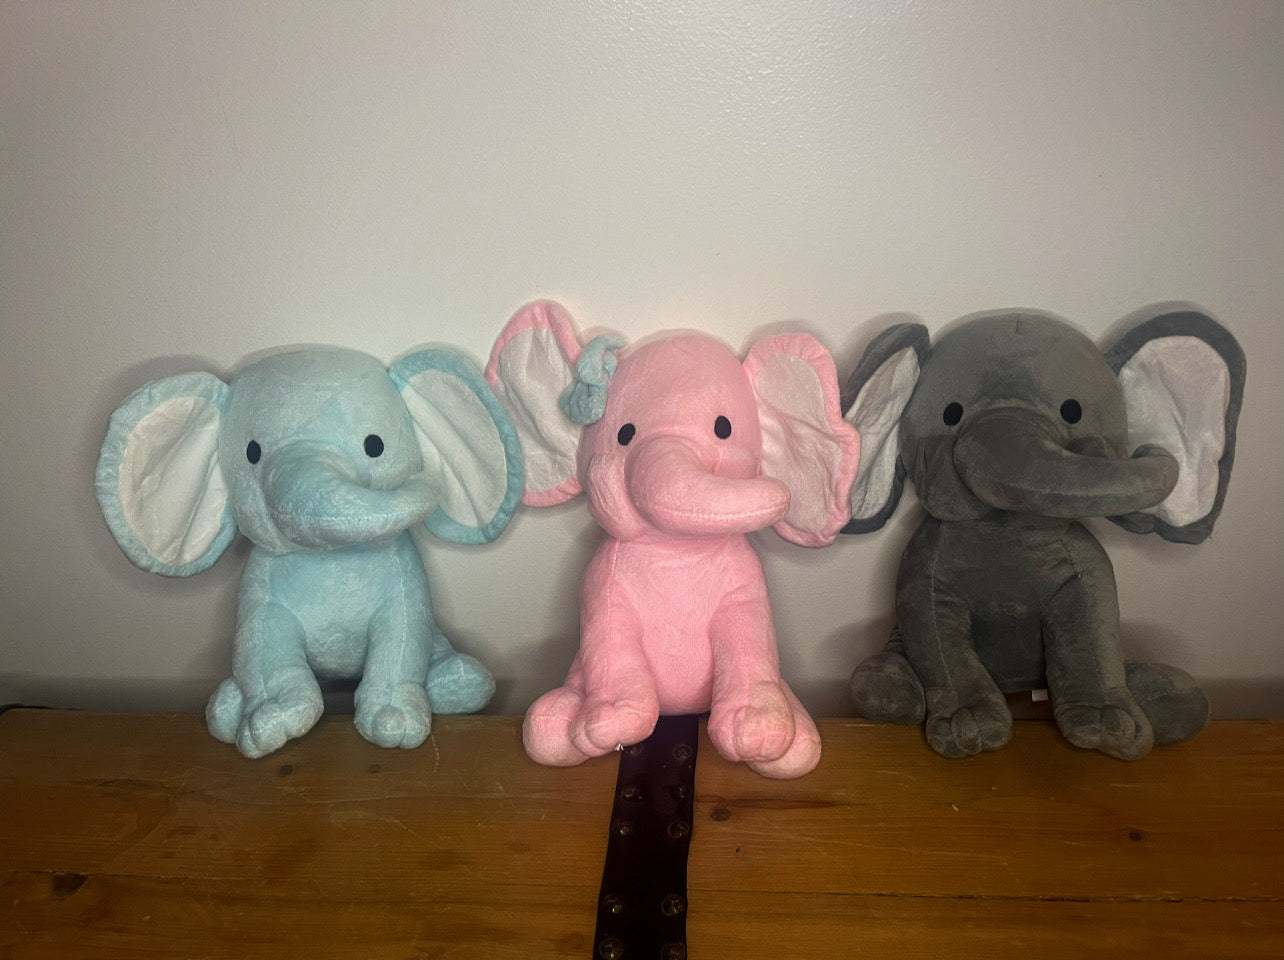 Plush toy Baby Birth Stat Elephants Blanks